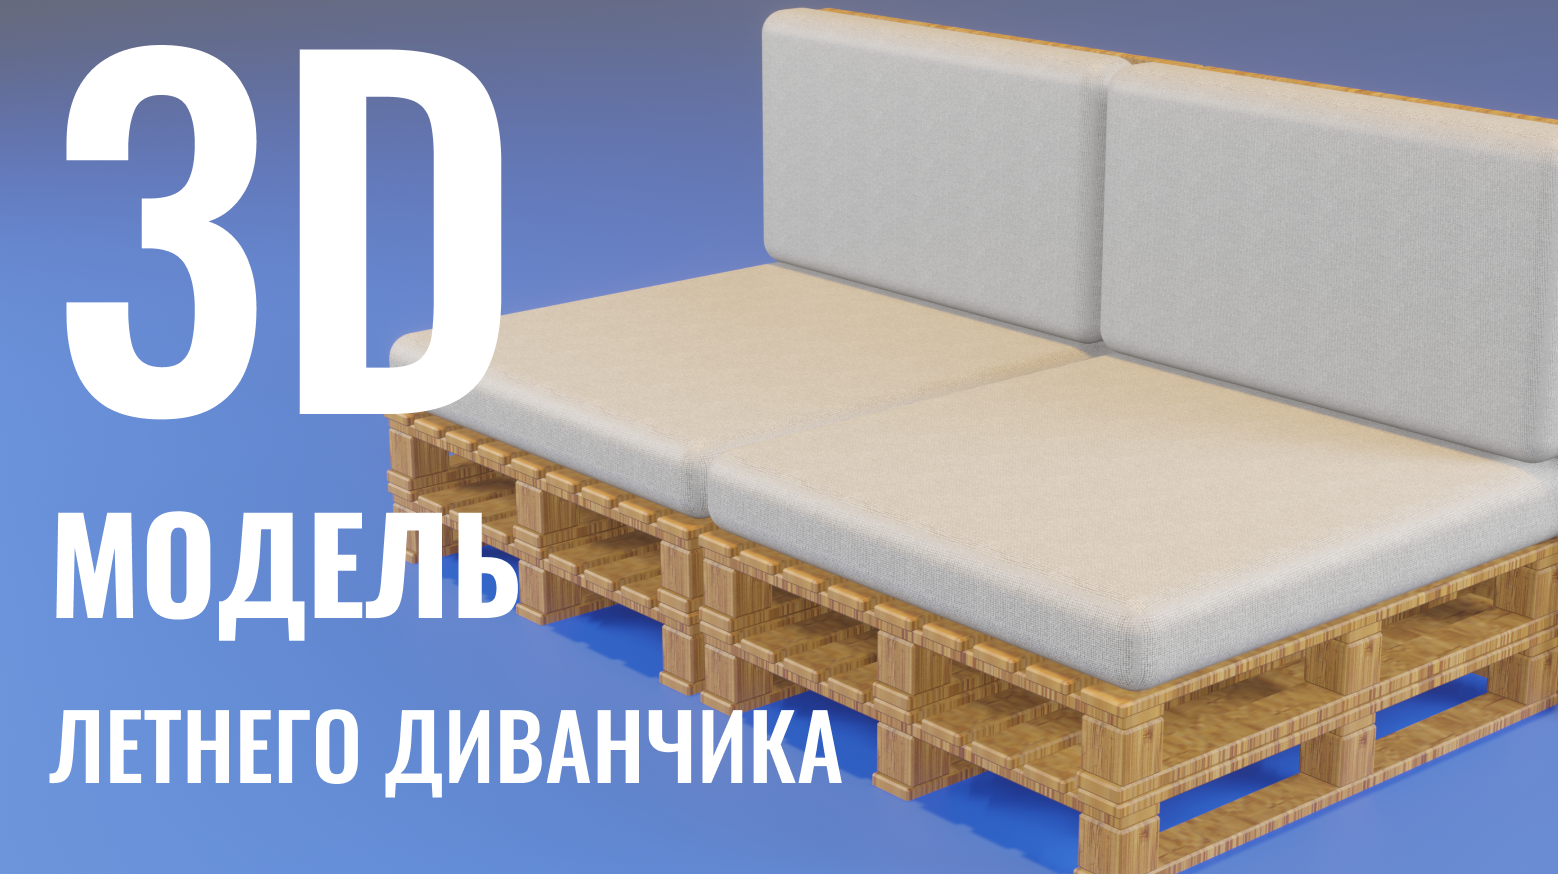 3D моделирование летнего диванчика из деревянных полетов